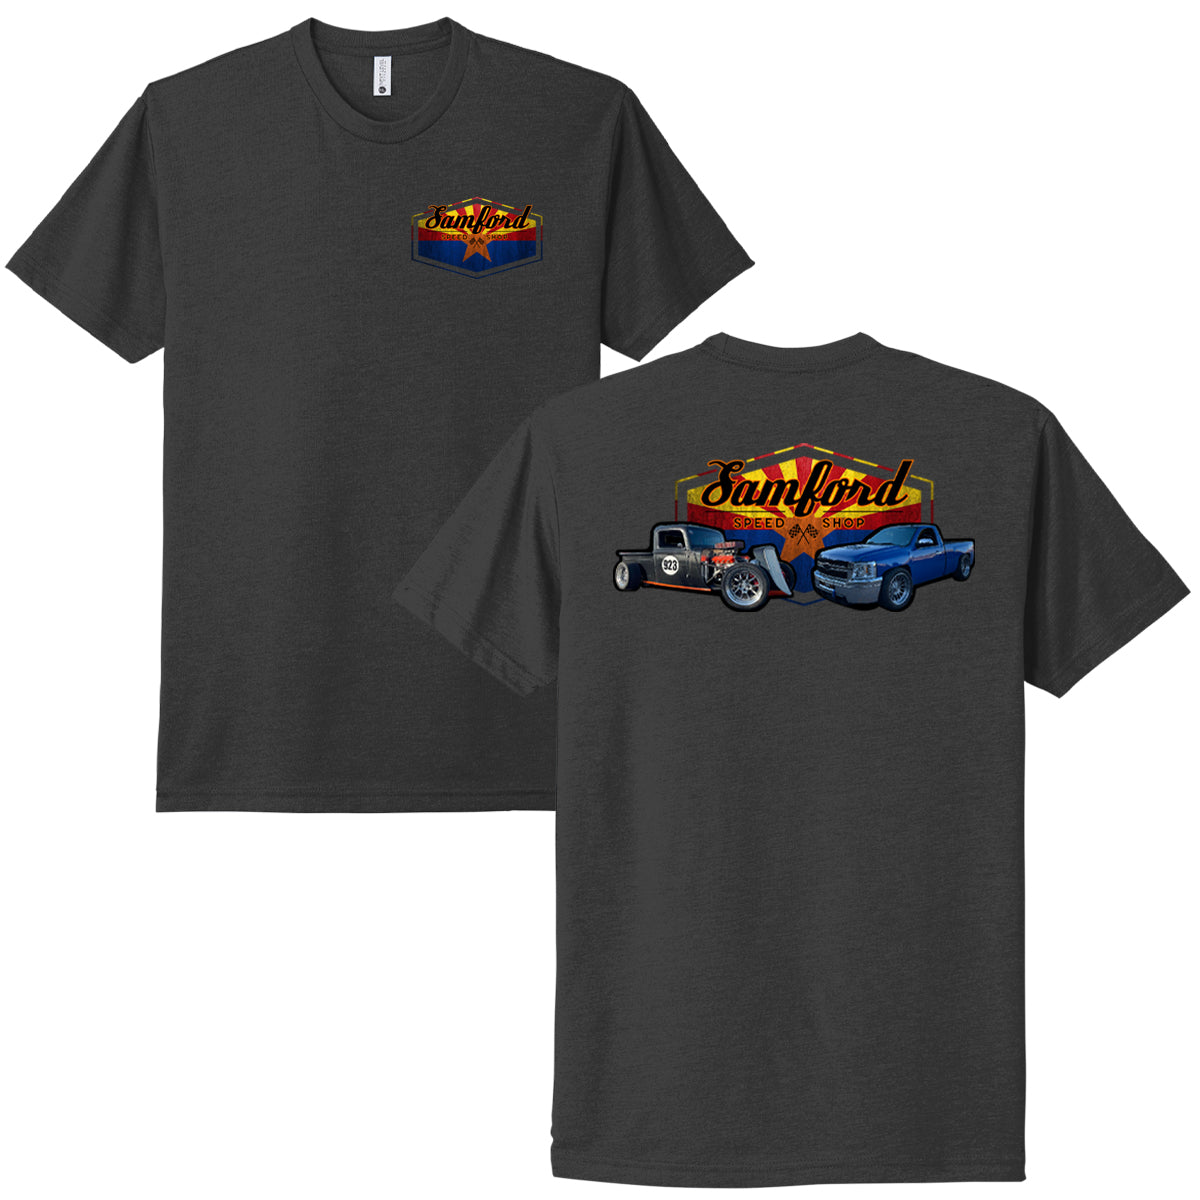 Samford Speed Shop Custom Shirts